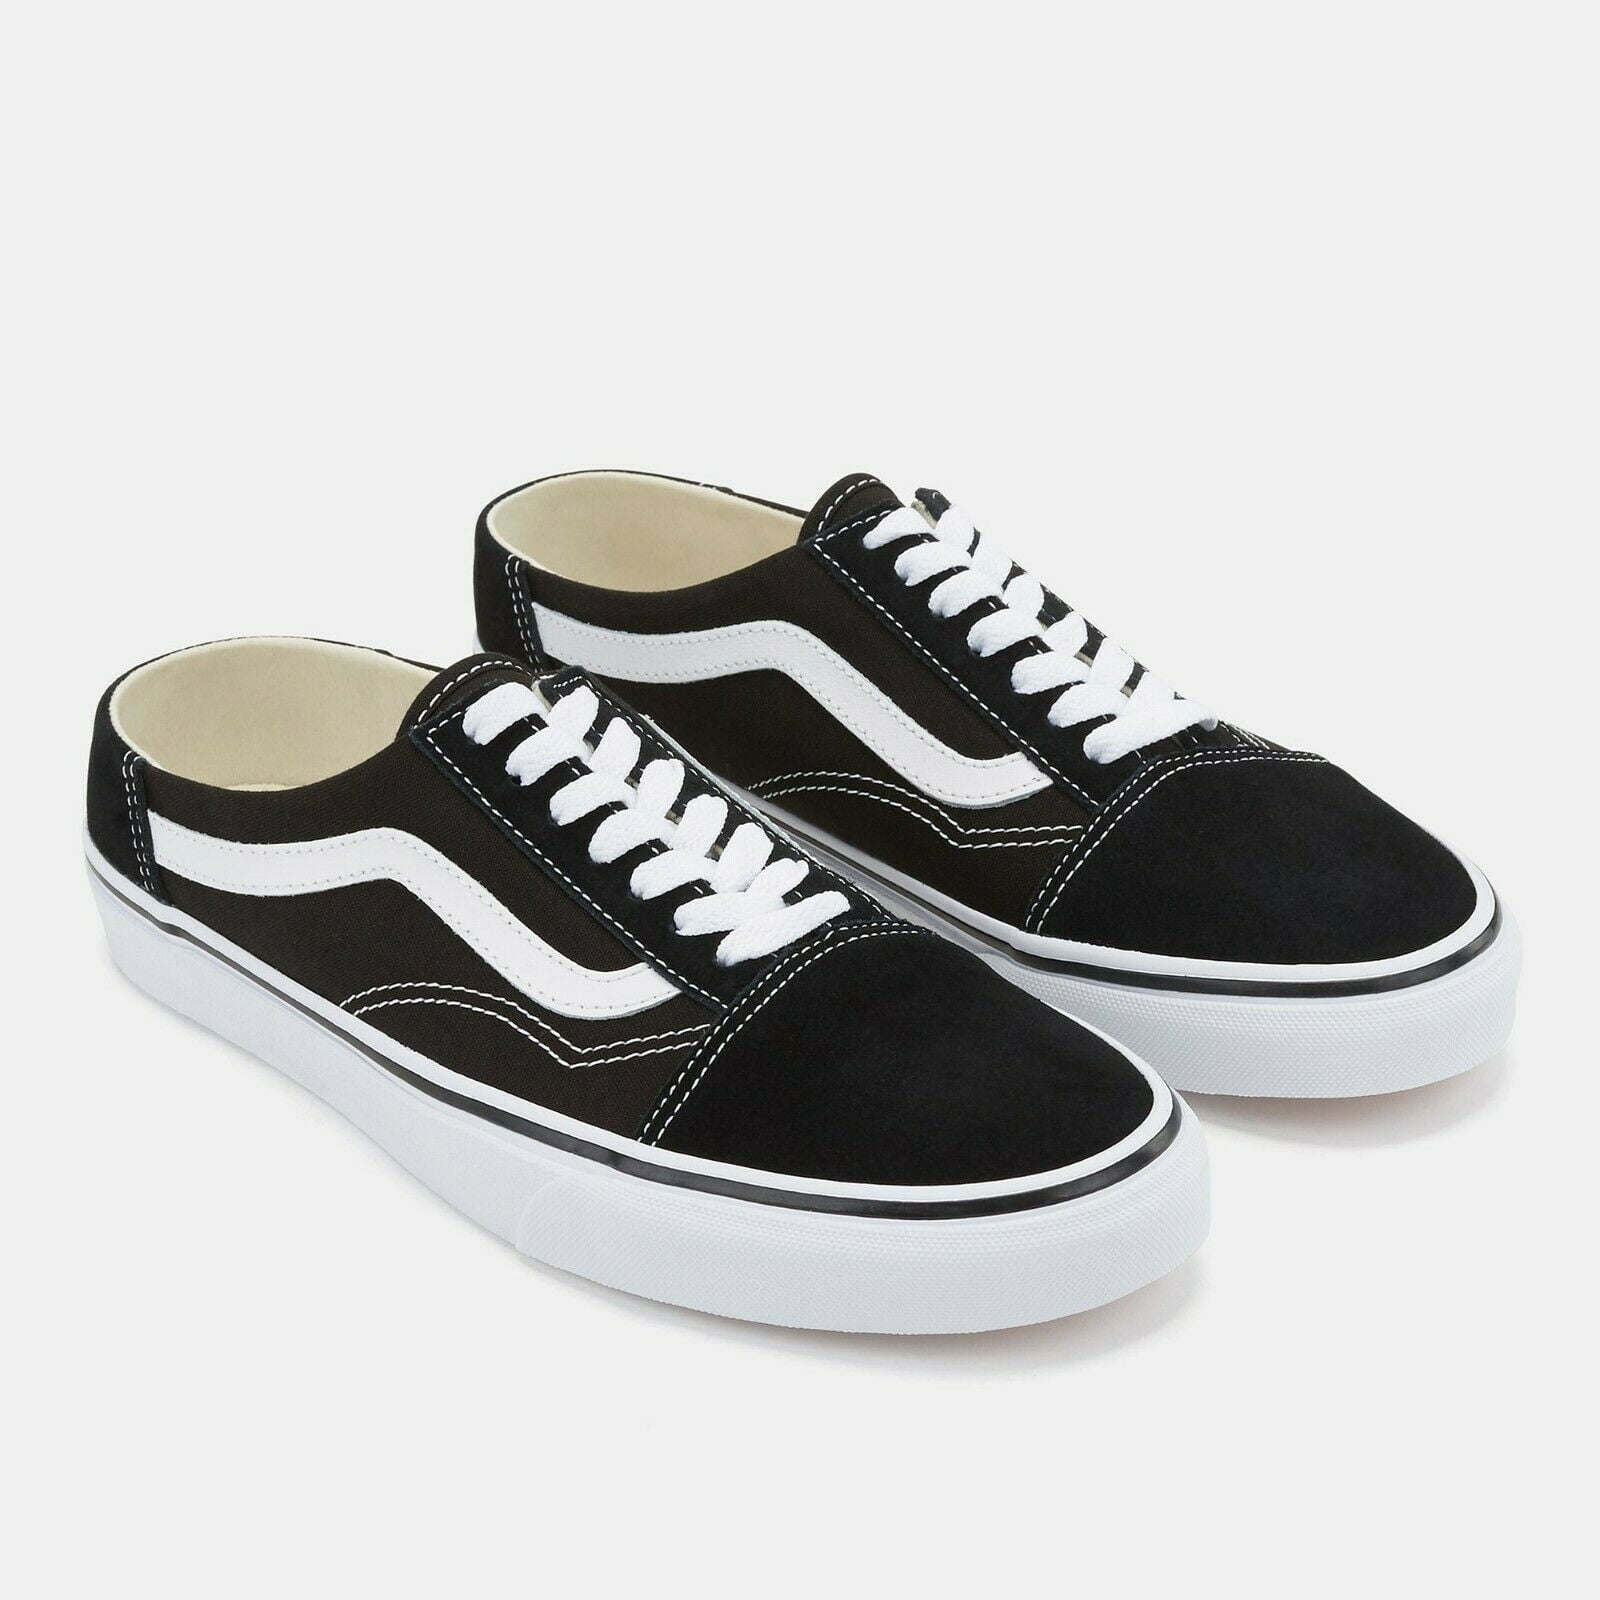 Vans Old Skool Mule Black/True White Men's Skate Shoes Size 10